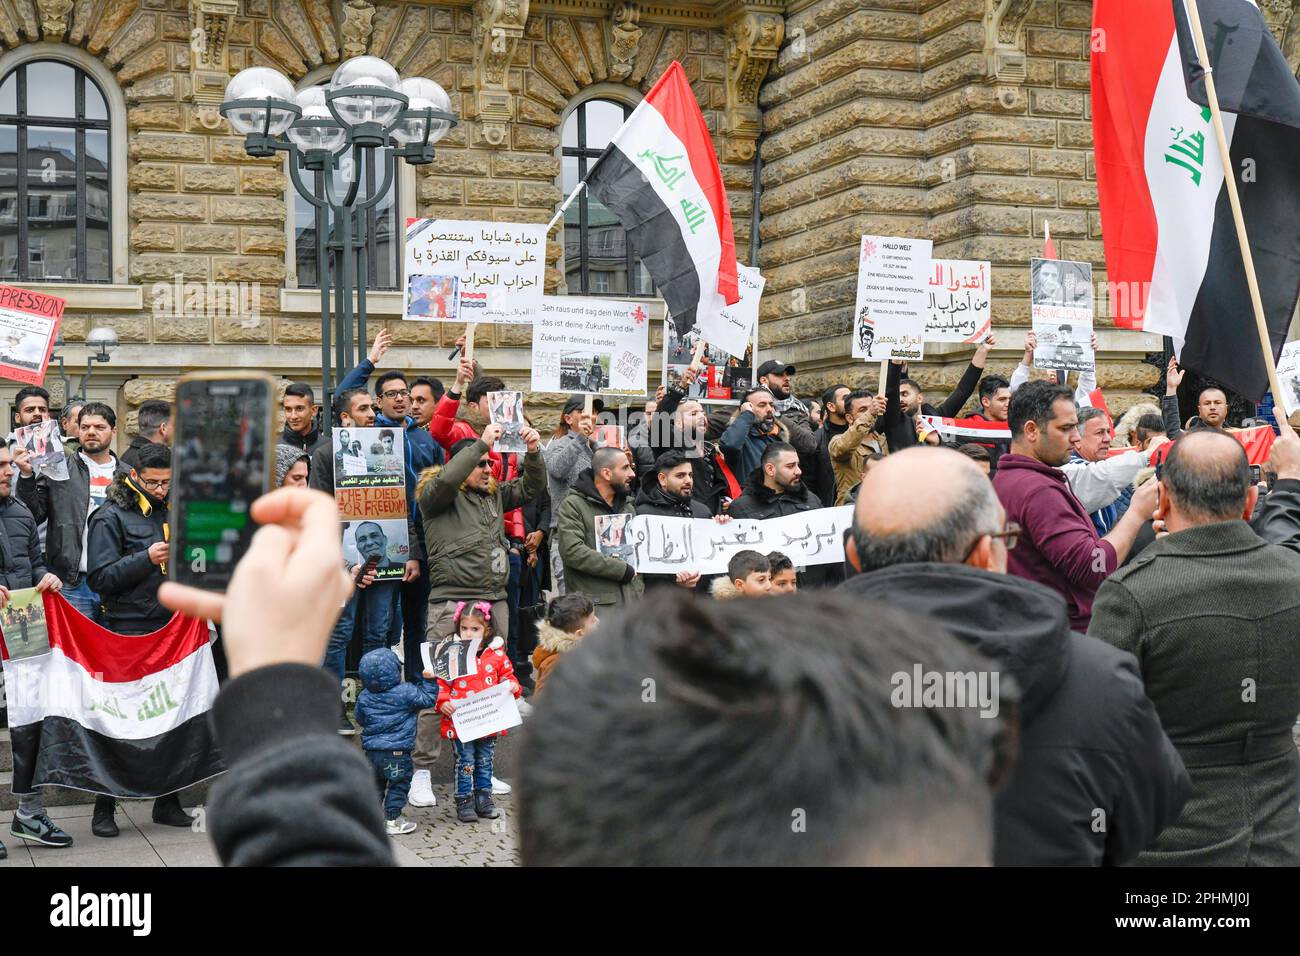 Manifestation contre la violence contre des manifestants pacifiques en Irak, Hambourg (Allemagne), 06 octobre 2019. Banque D'Images